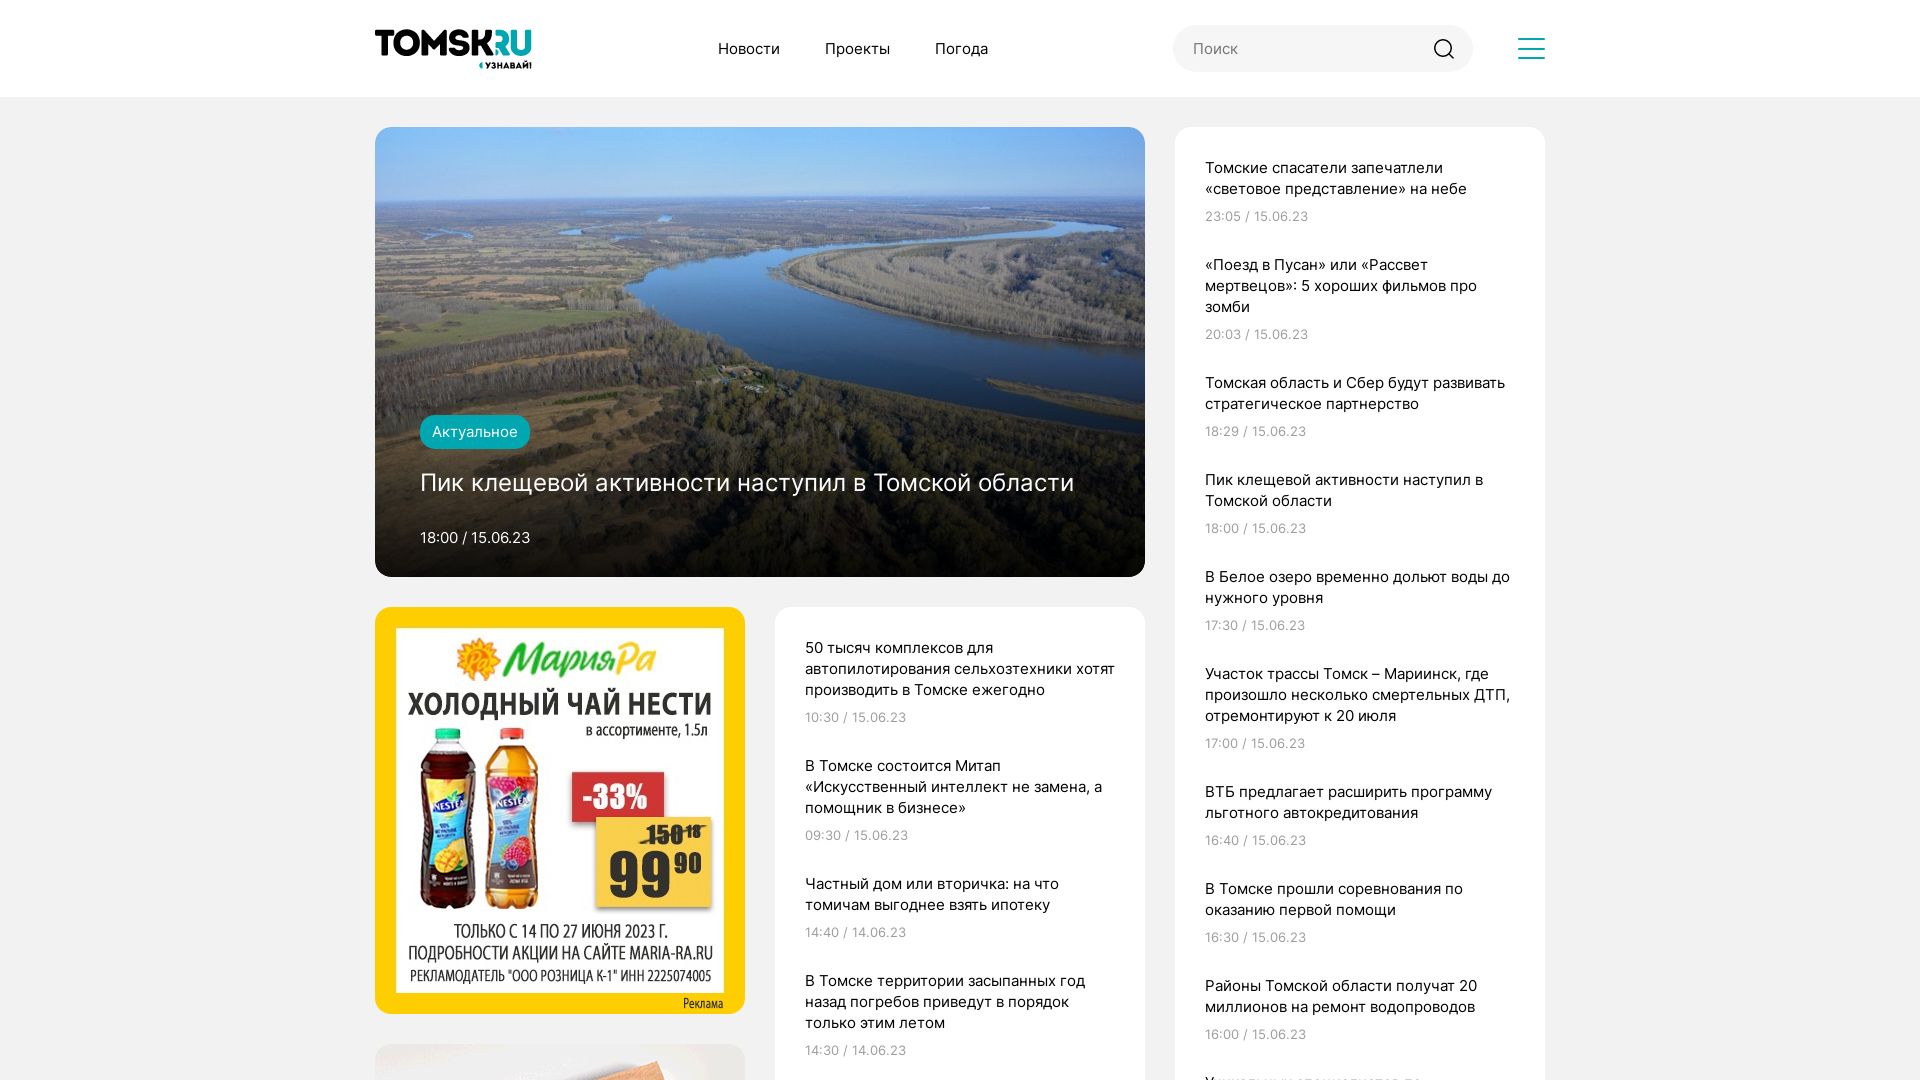 Status do site tomsk.ru está   ONLINE